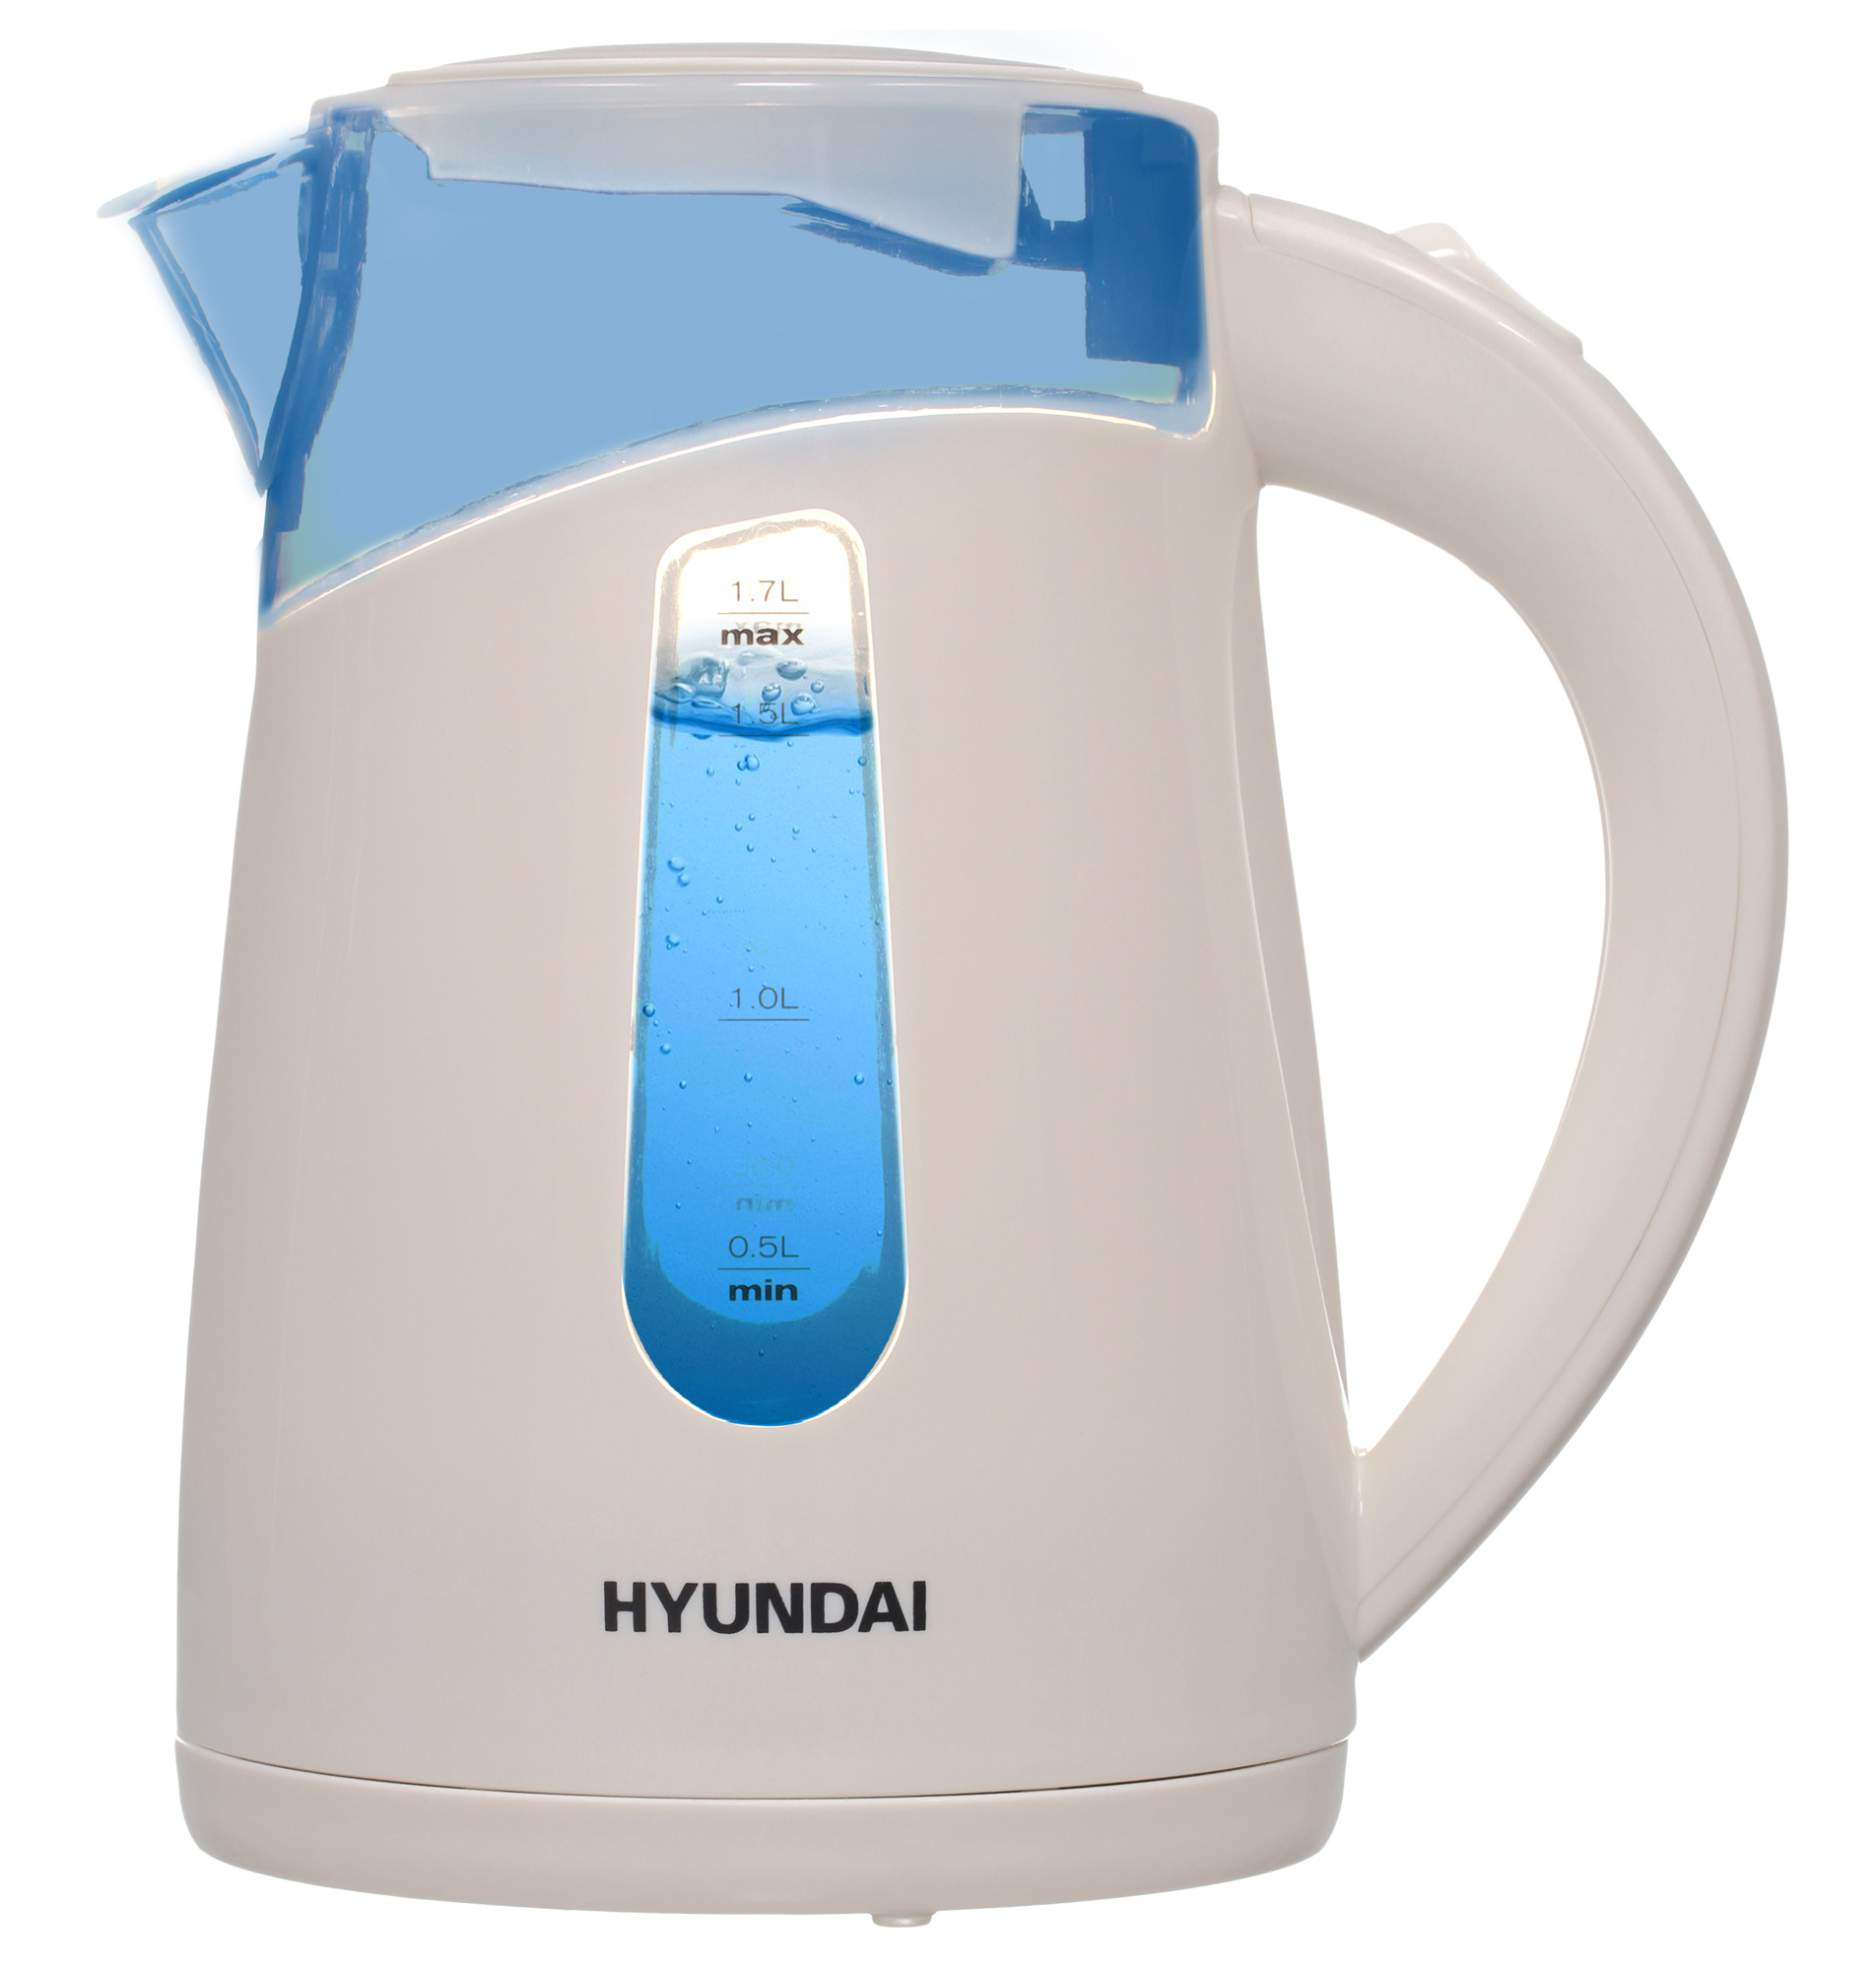 Чайник электрический Hyundai HYK-P2030 1.7л. 2200Вт кремовый корпус: пластик